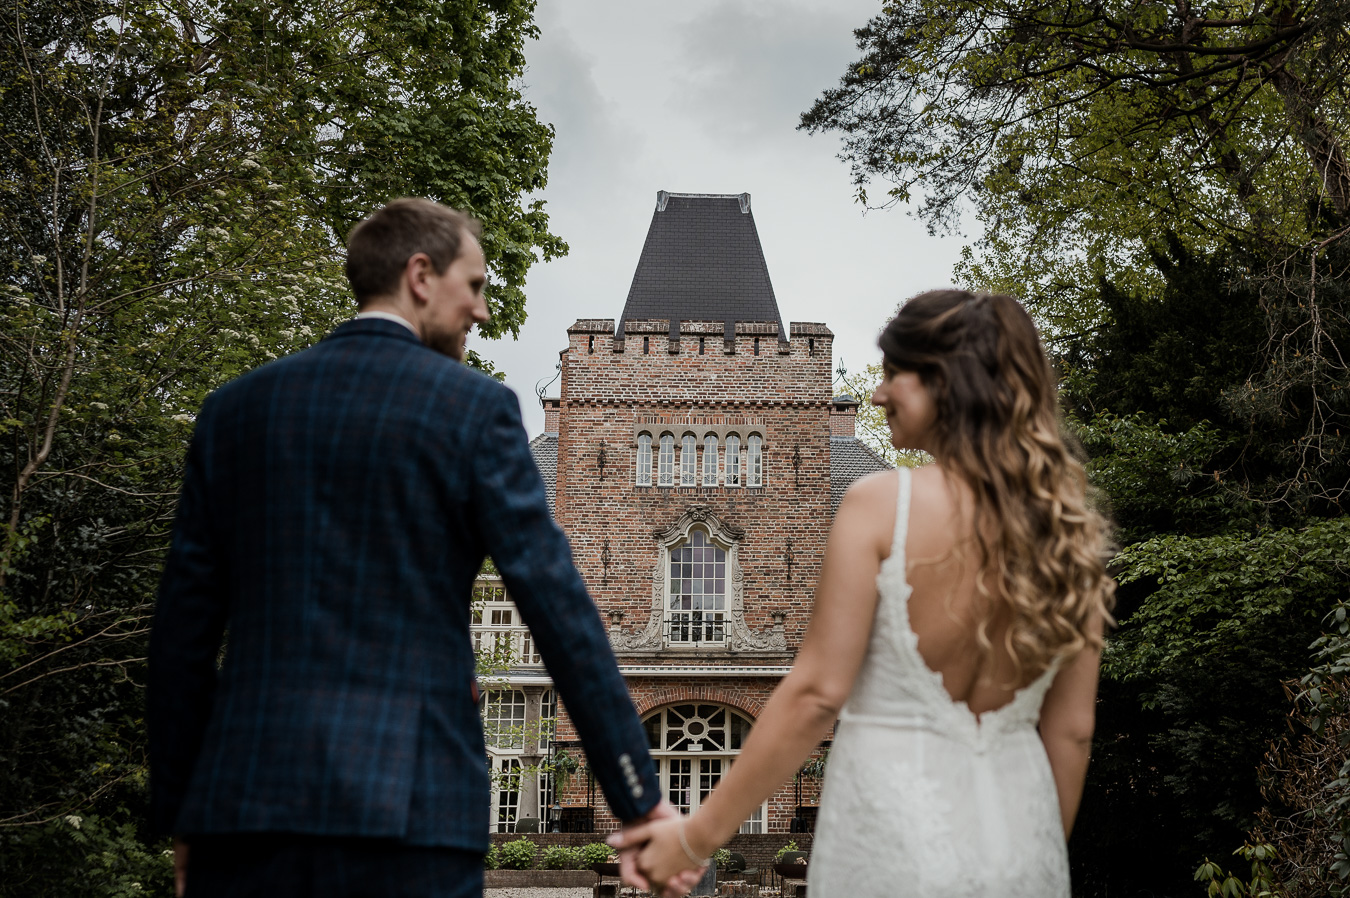 kasteel kerckebosch,bruiloft,fotograaf,zeist,dayofmylife-54